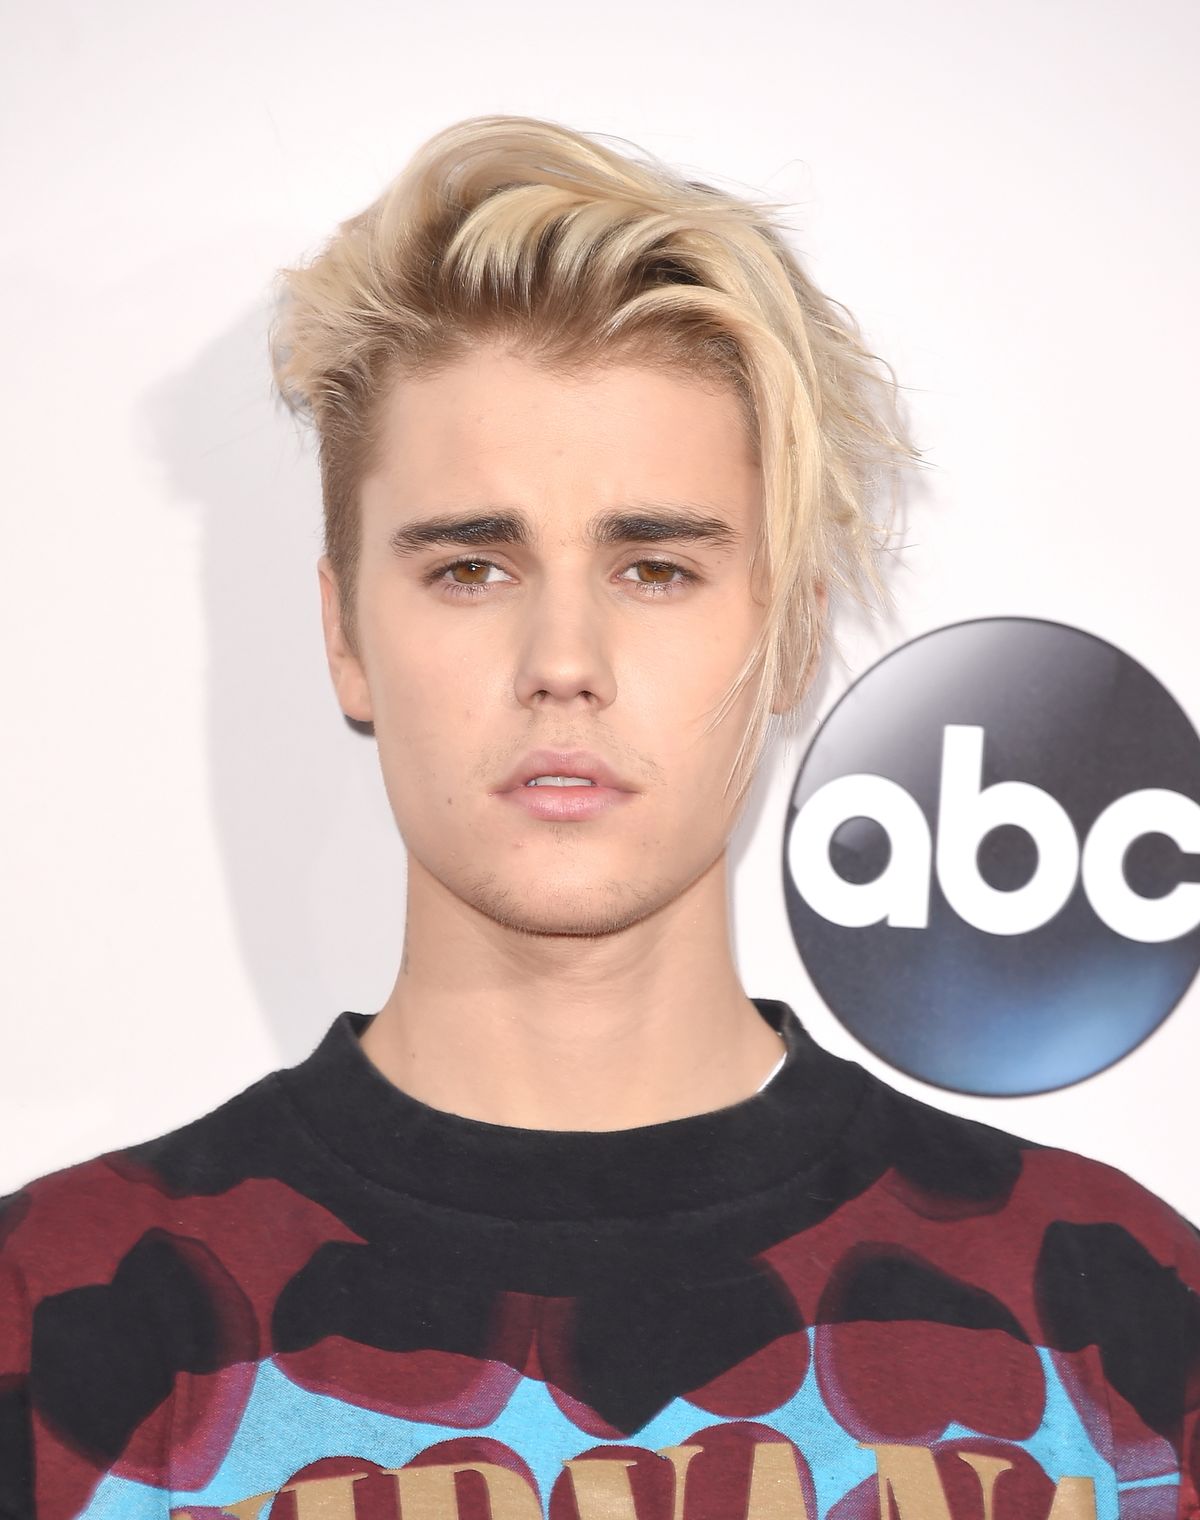 Warum hat Justin Bieber sein berühmtes Haar lila gefärbt?